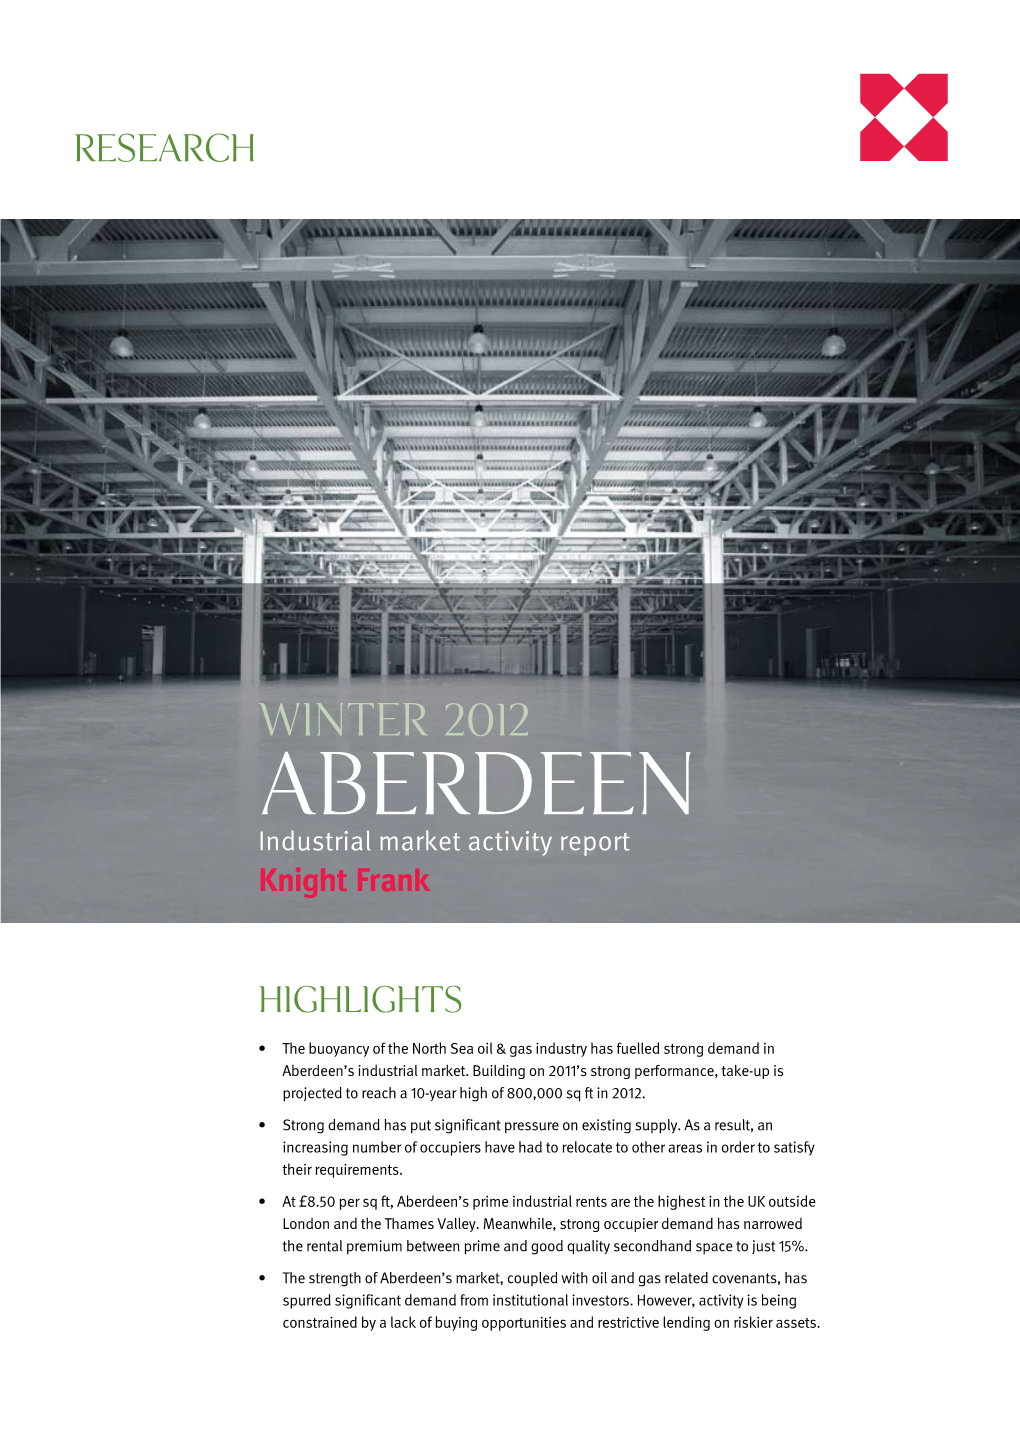 Aberdeen Industrial Market Activity Report